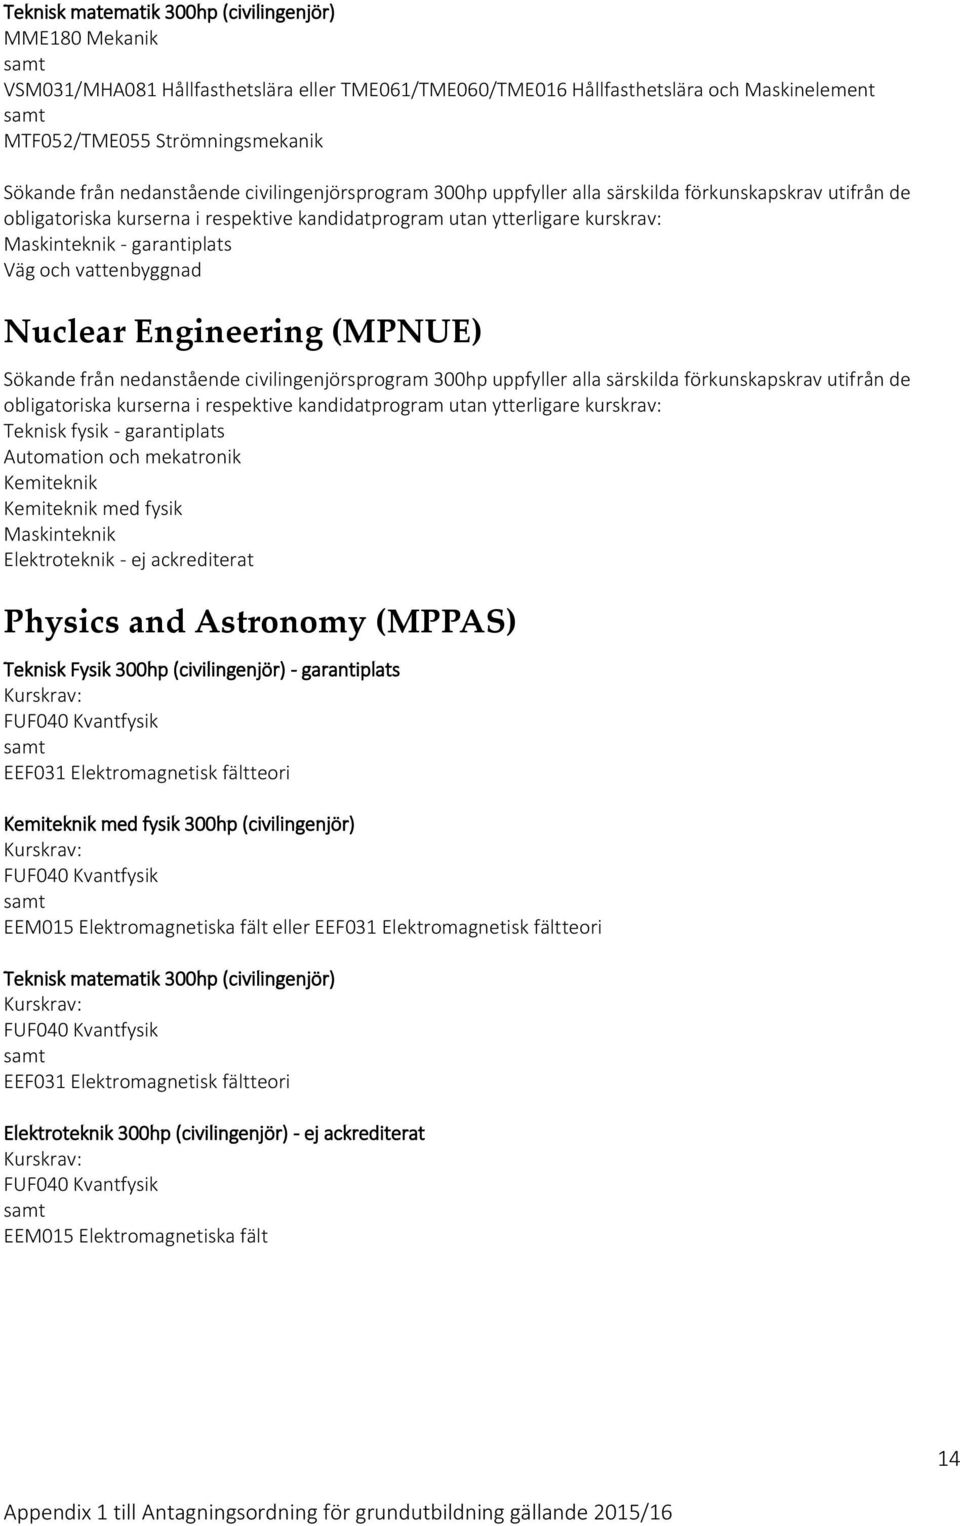 Physics and Astronomy (MPPAS) Teknisk Fysik 300hp (civilingenjör) - garantiplats FUF040 Kvantfysik EEF031 Elektromagnetisk fältteori Kemiteknik med fysik 300hp (civilingenjör) FUF040 Kvantfysik